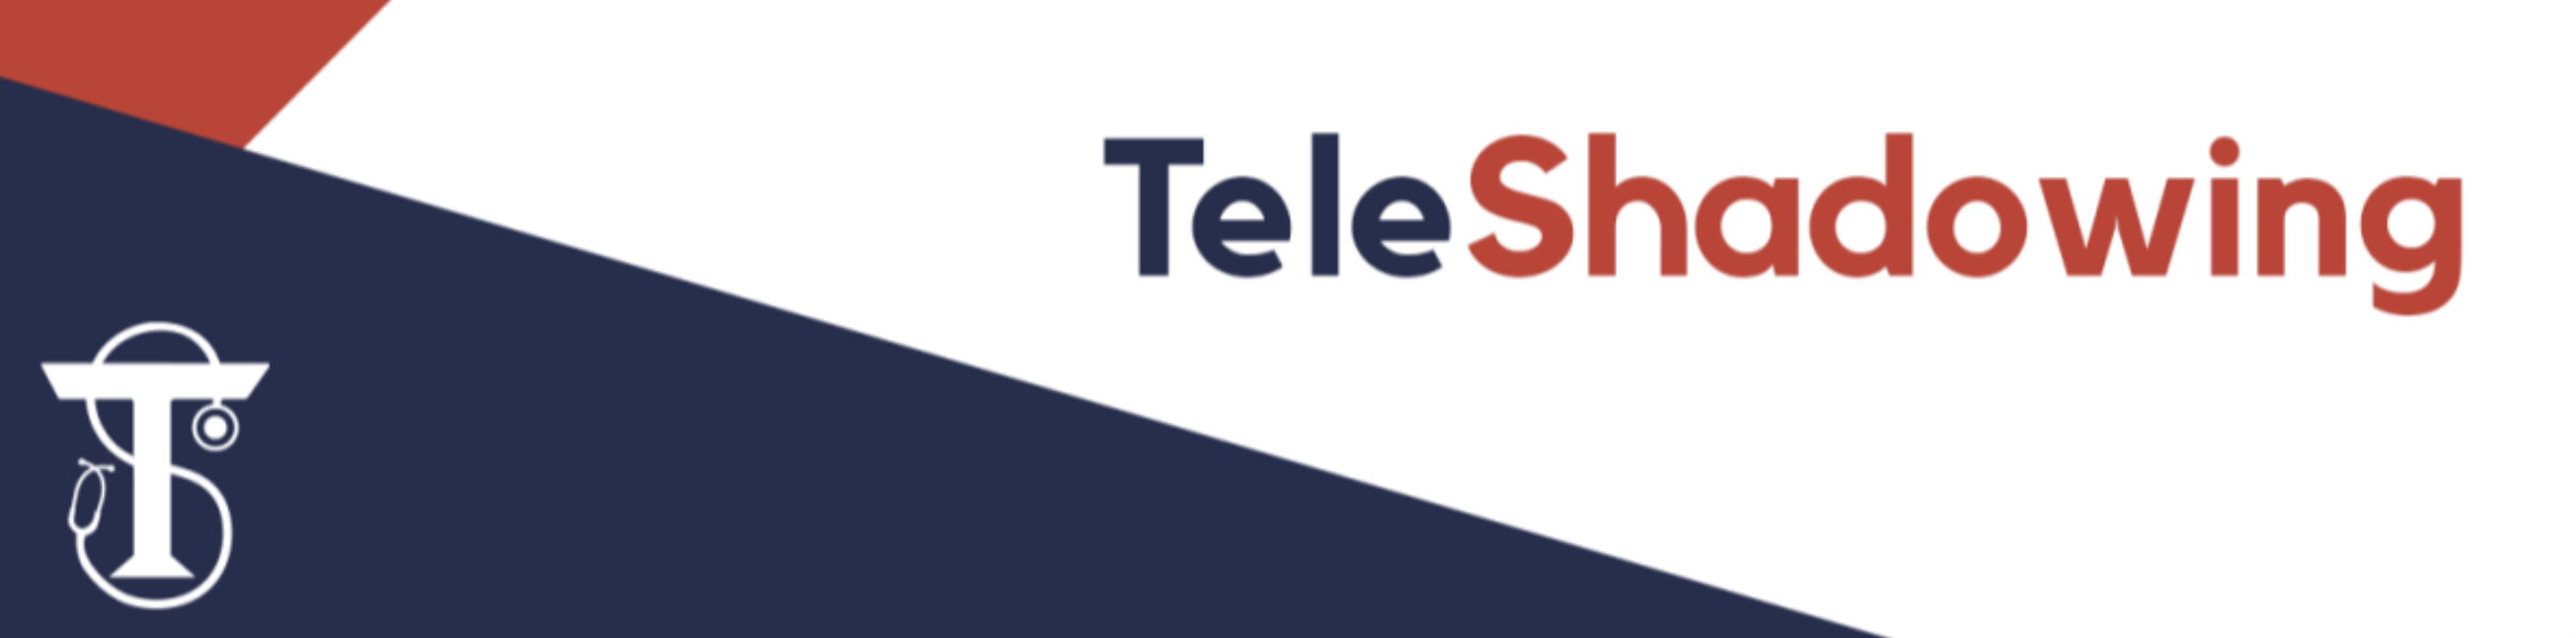 TeleShadowing